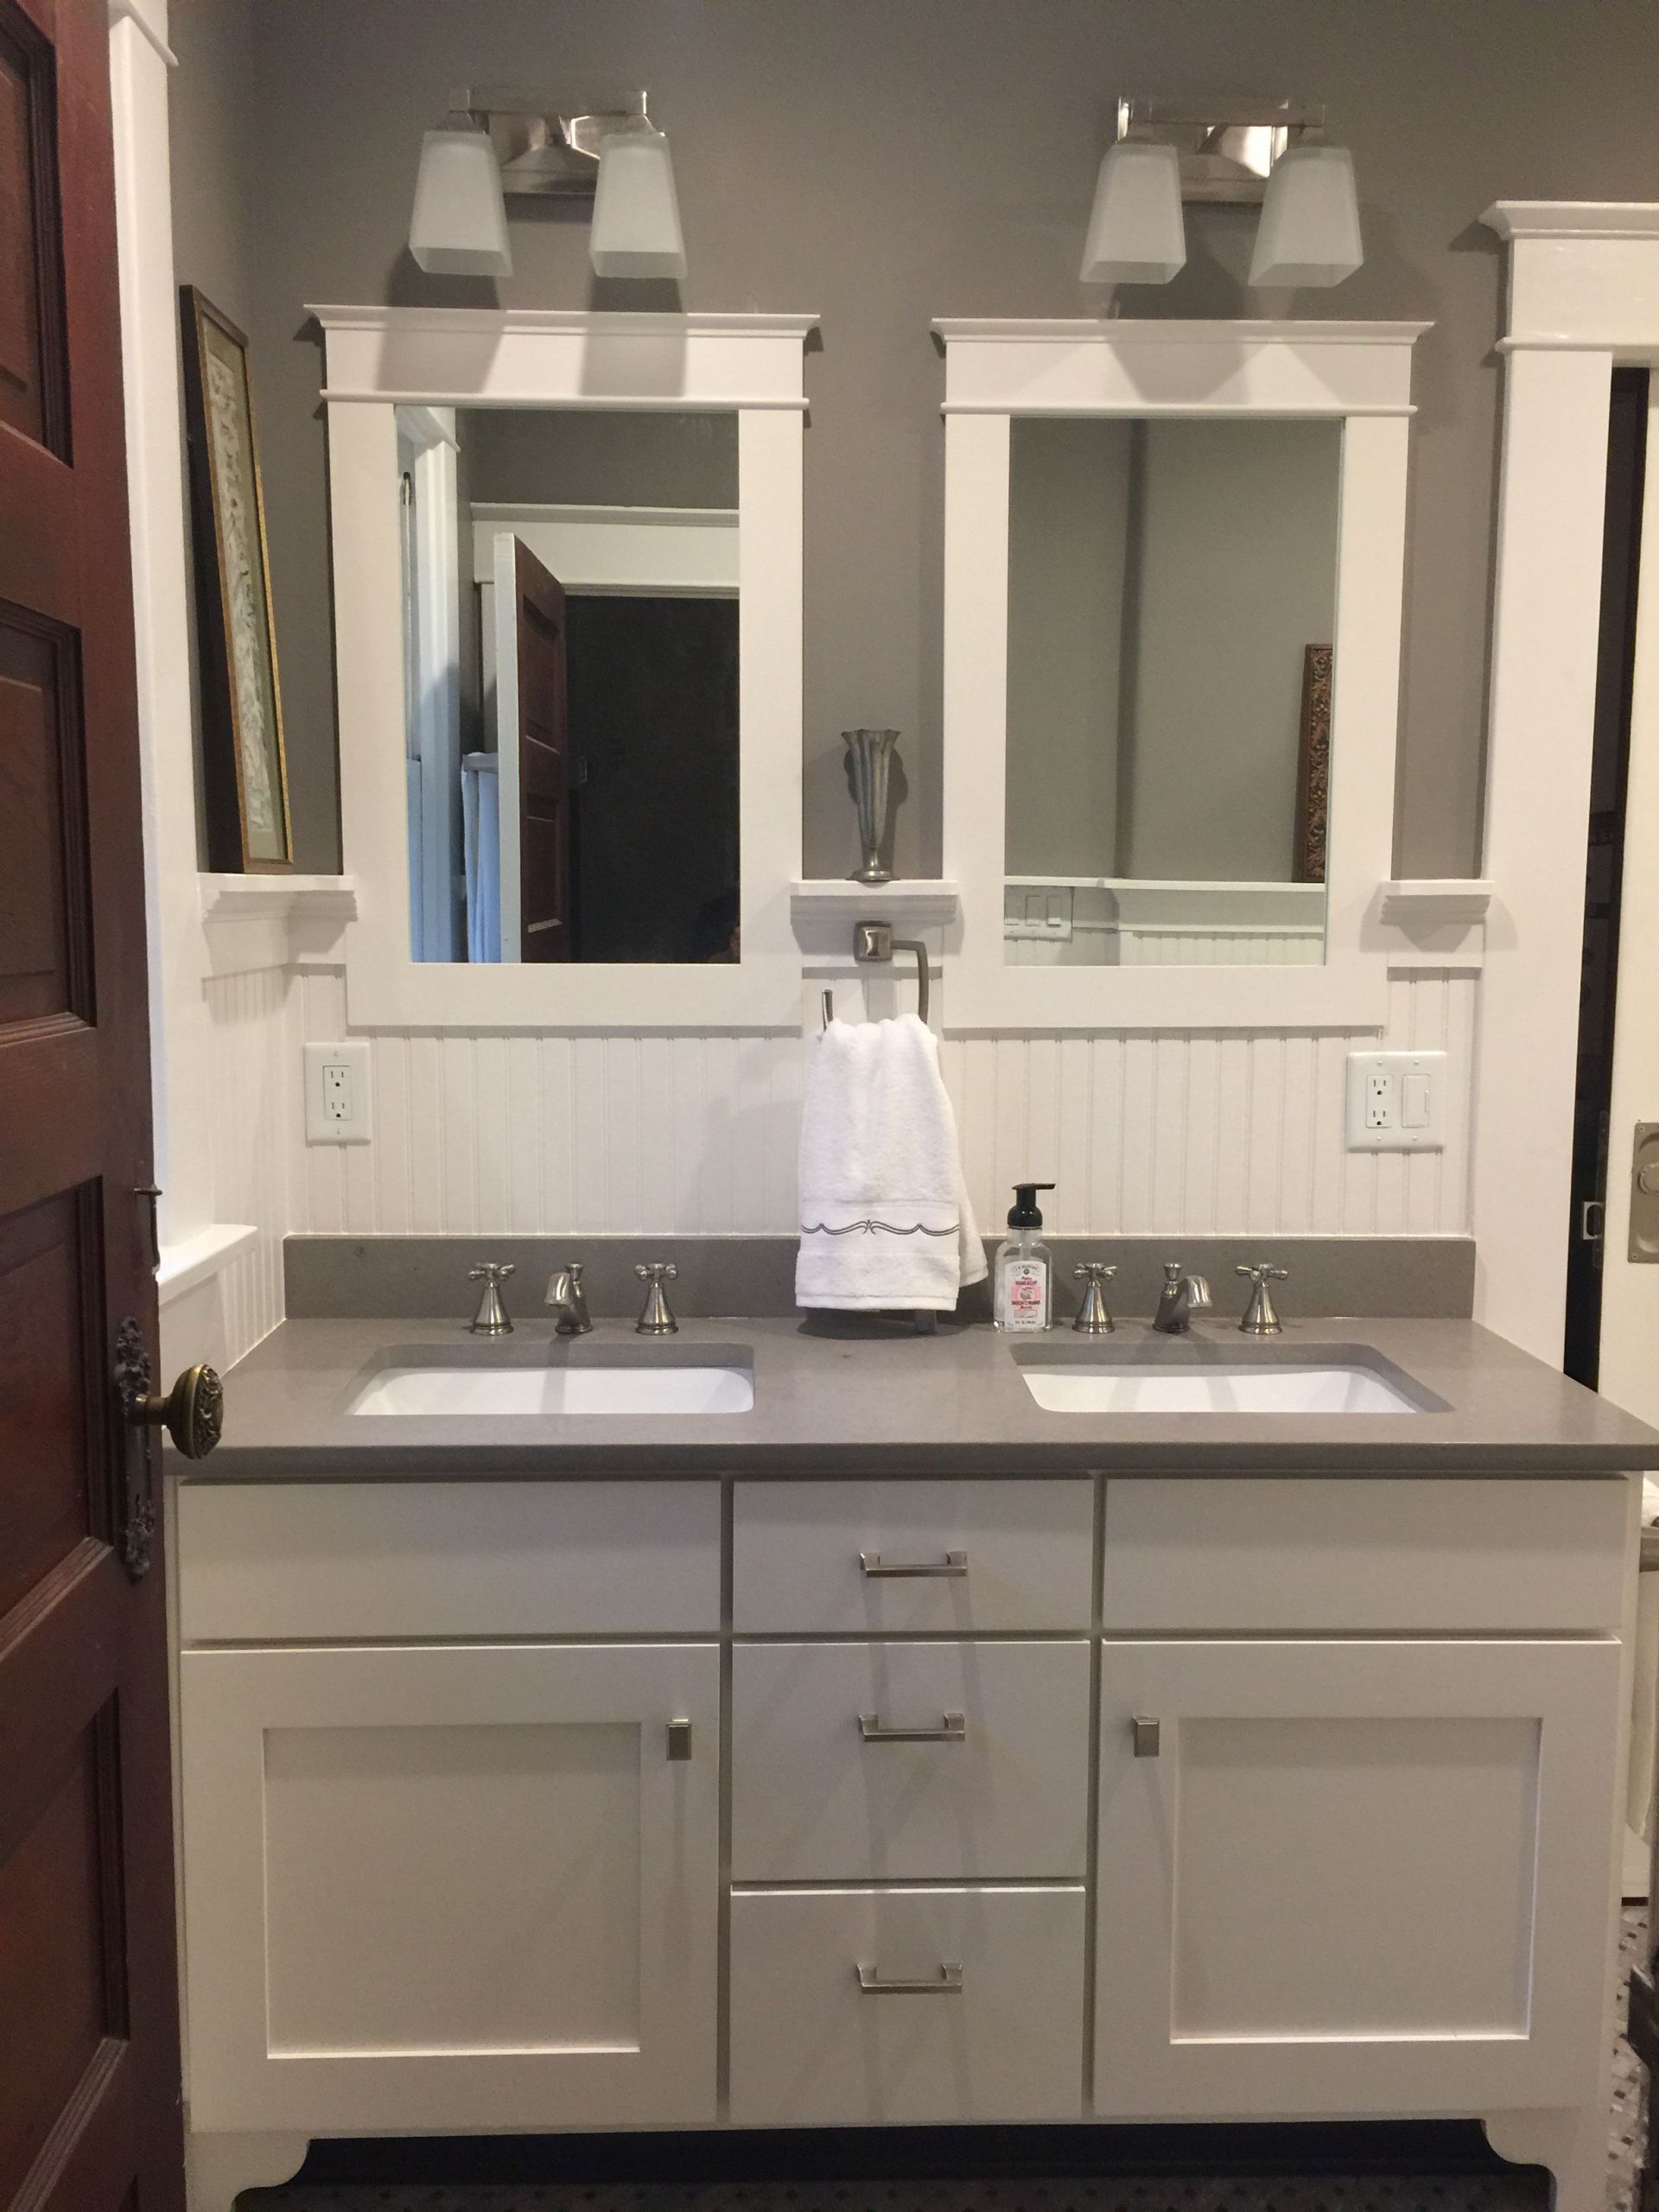 Craftsman Style Bathroom Mirror
 Craftsman bathroom